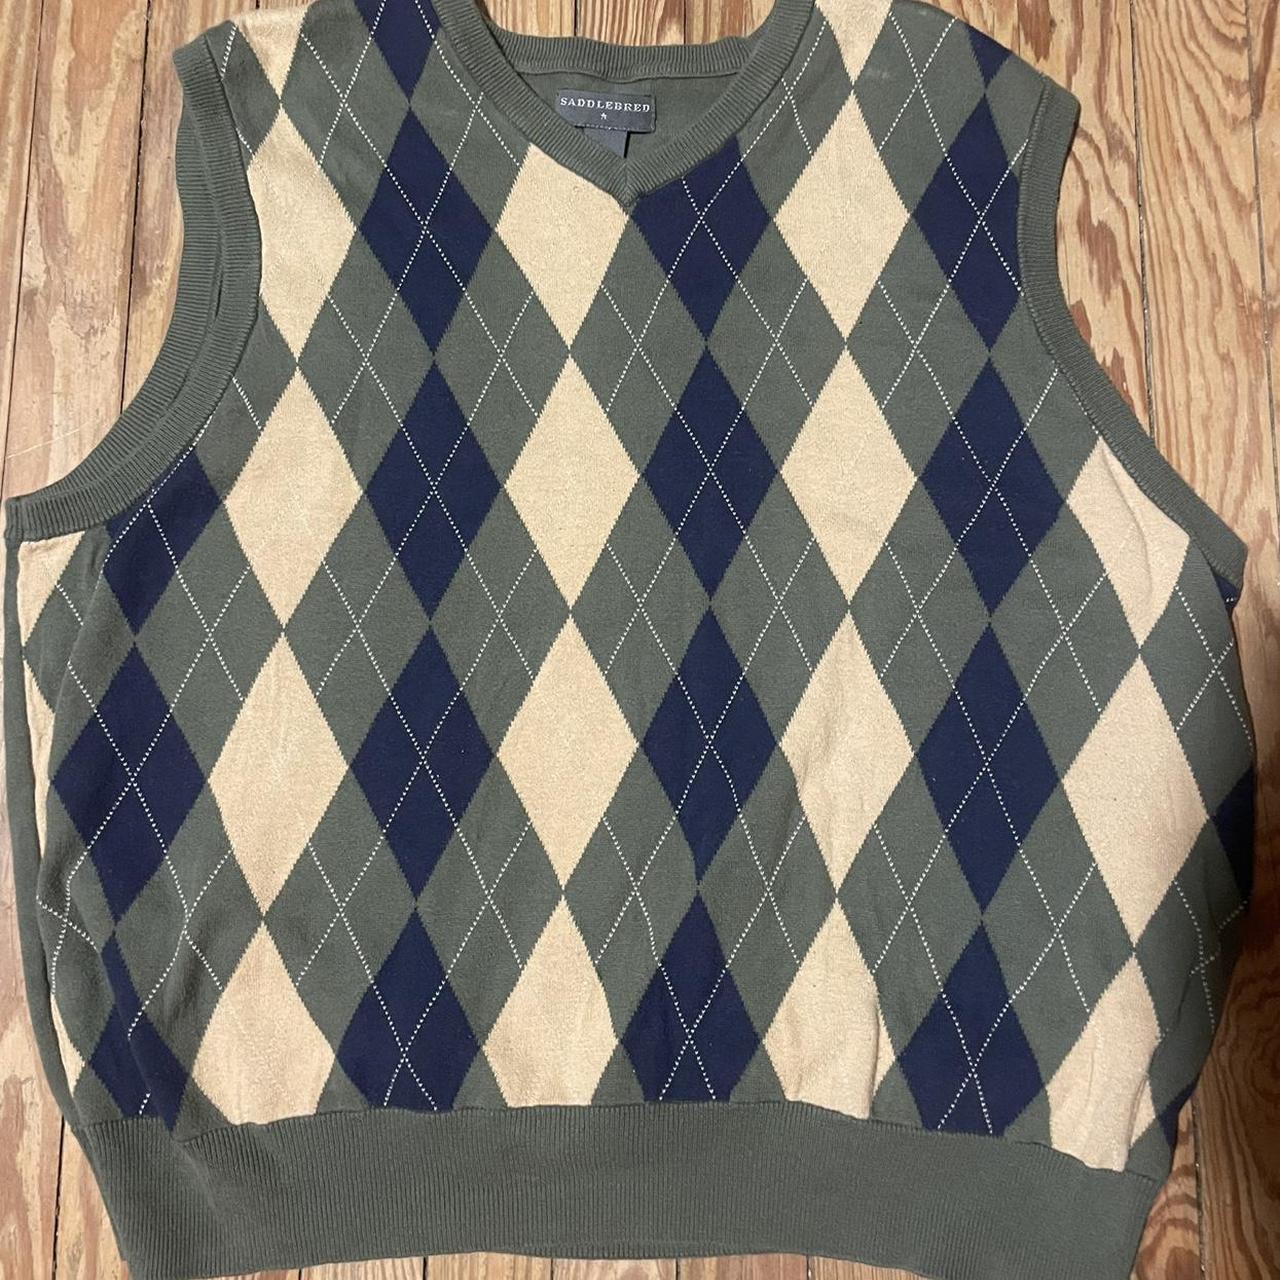 Saddlebread vintage sweater vest 💝 Perfect for... - Depop